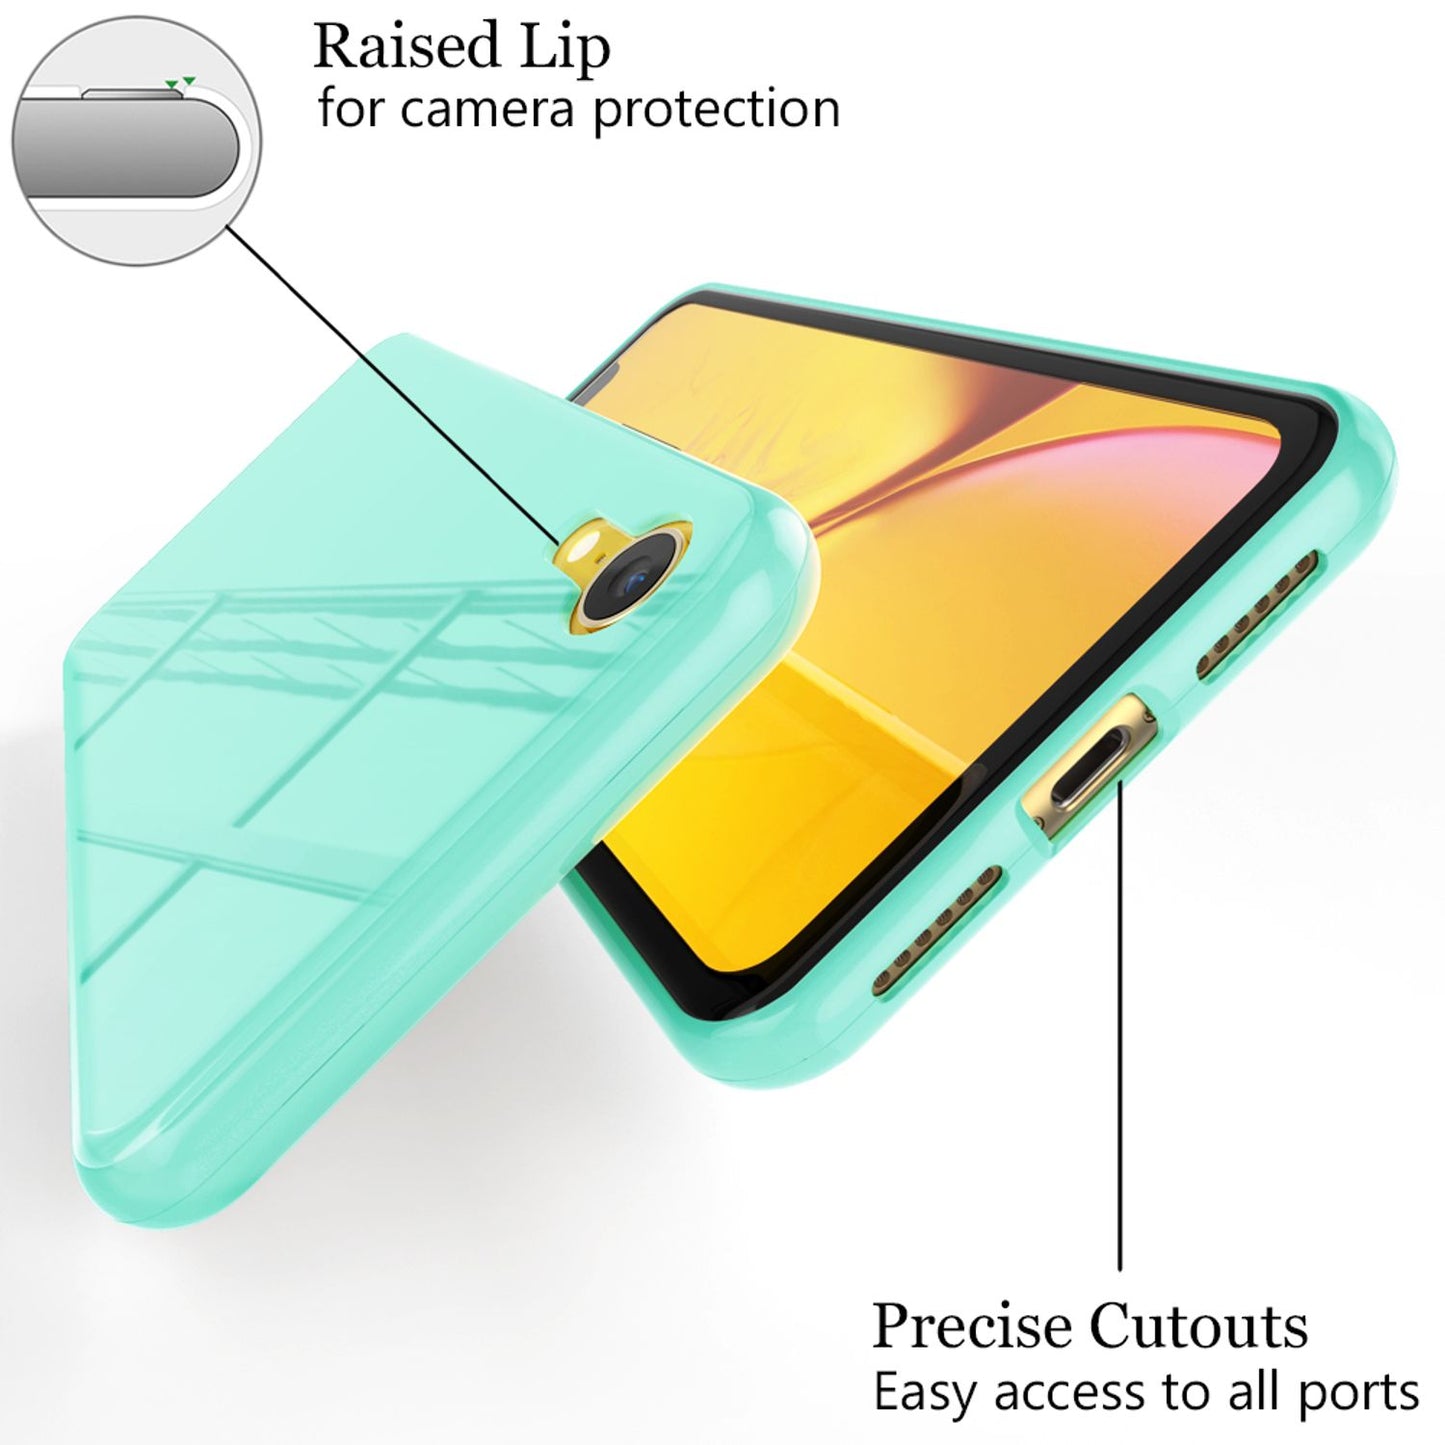 NALIA 360° Magnet Hülle für iPhone XR, Slim Hard Case Cover mit Display Schutz